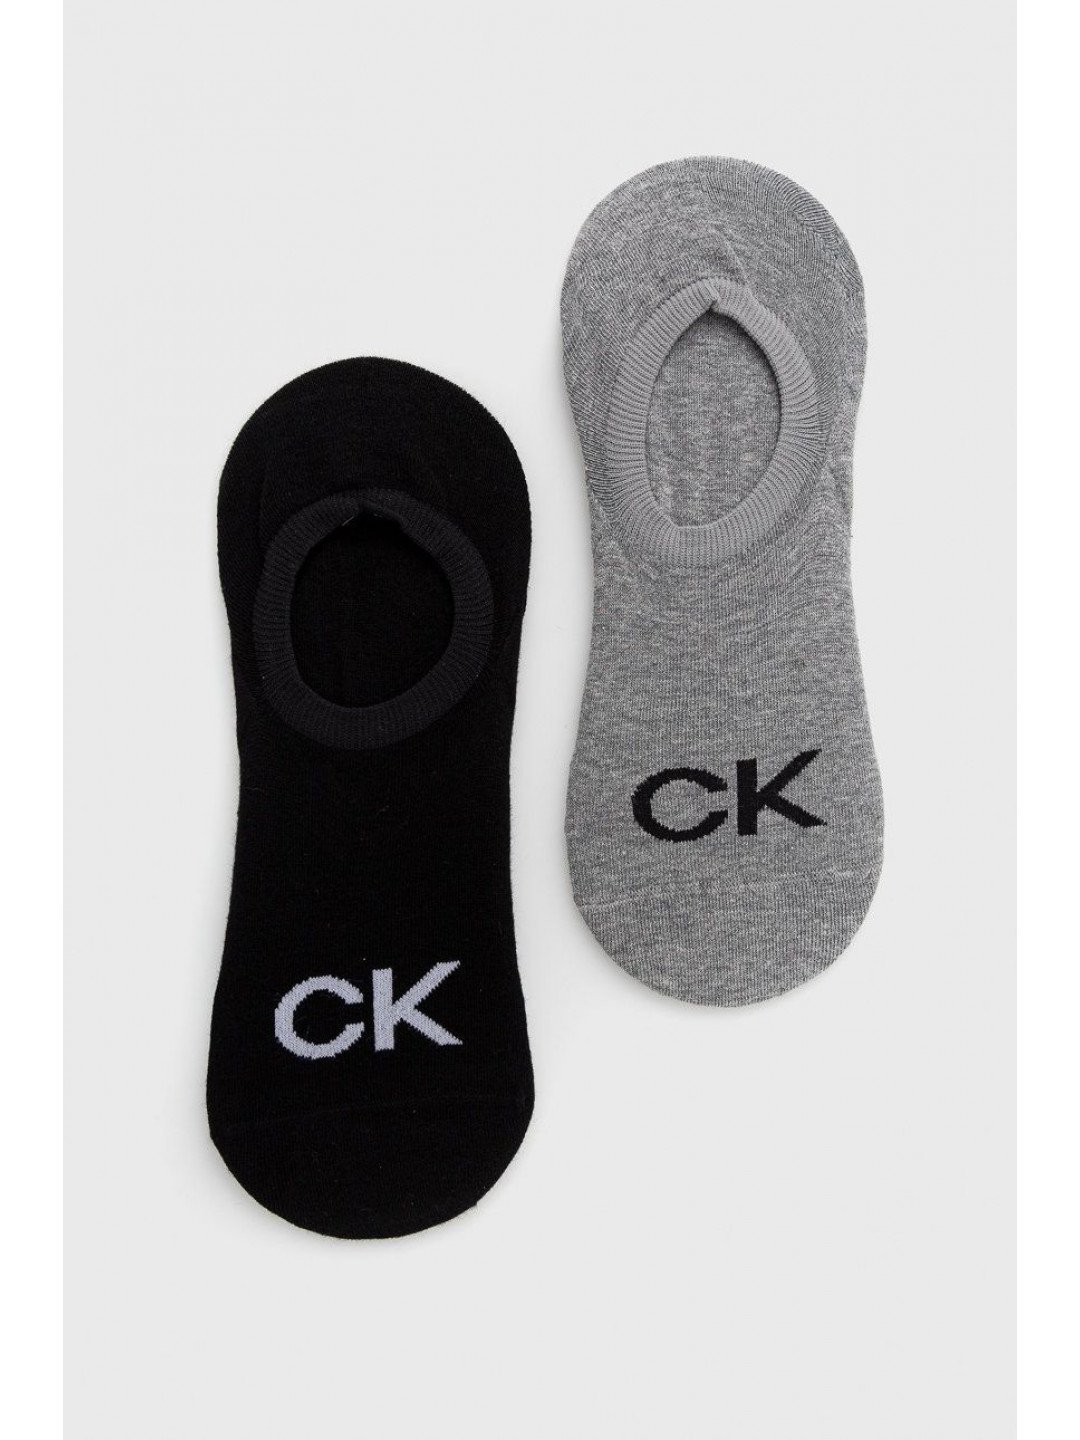 Ponožky Calvin Klein pánské šedá barva